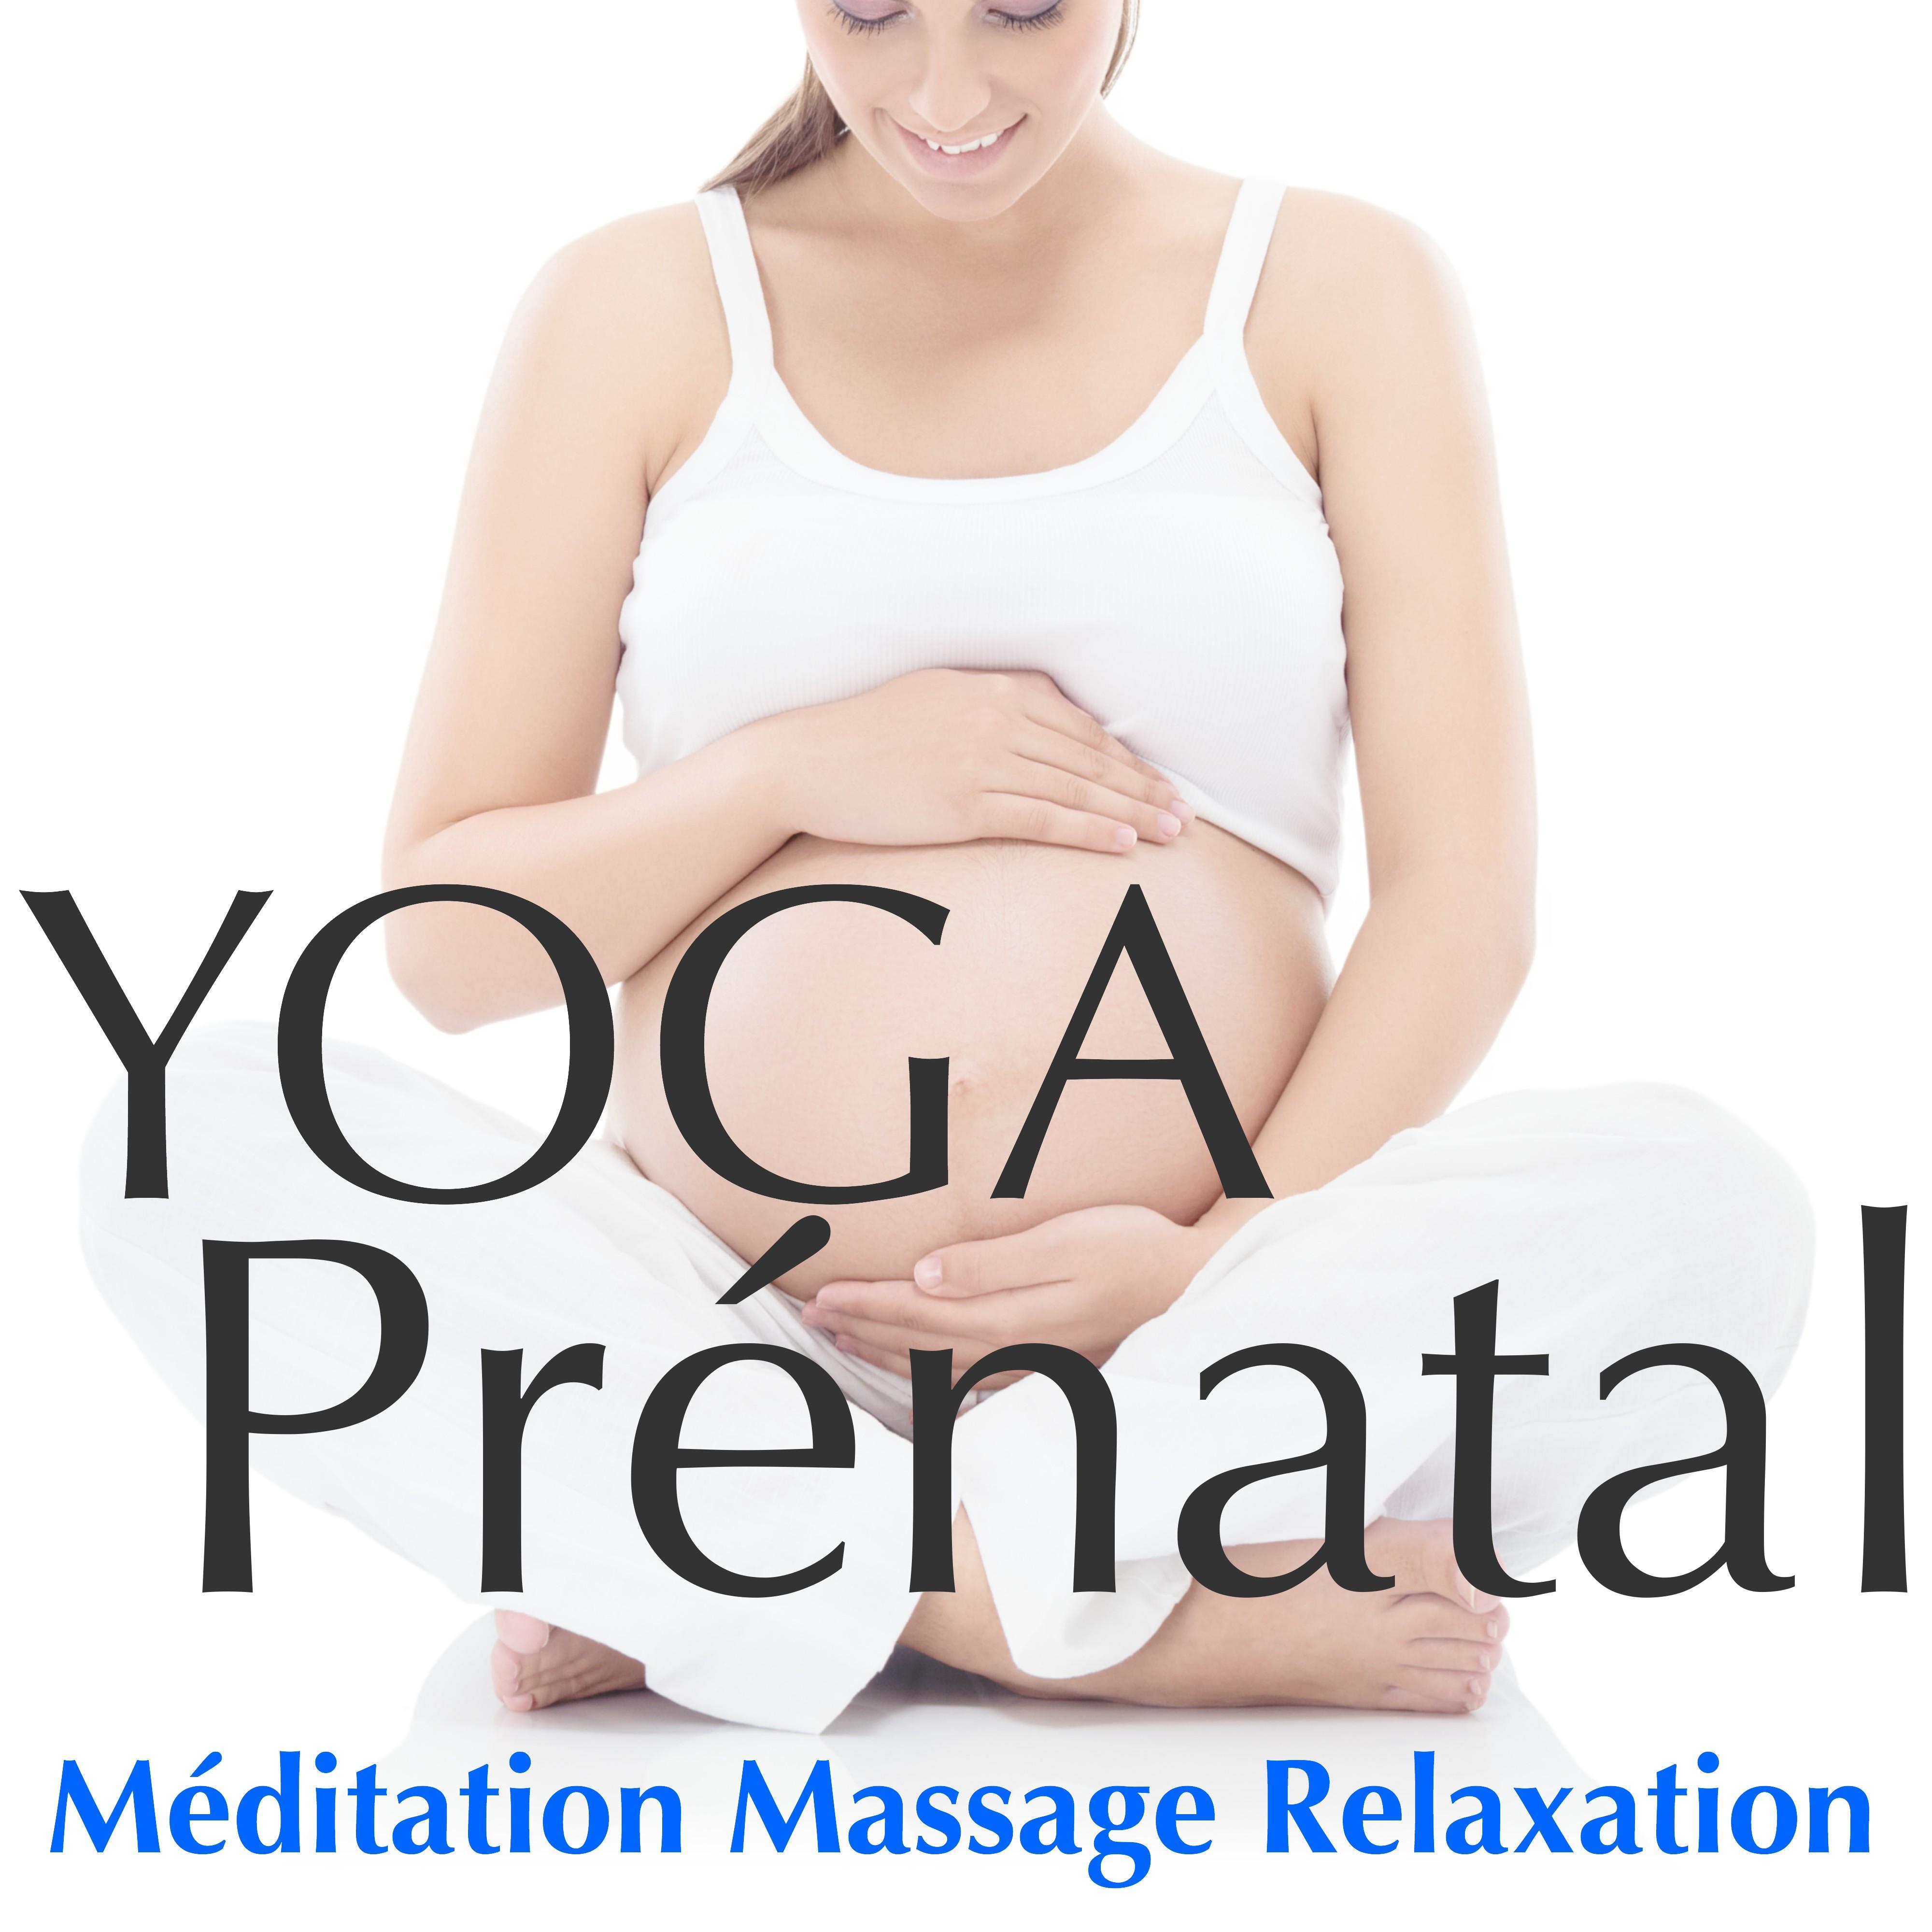 Yoga Pre natal  Musique Relaxante pour De tente Femme Enceinte, Me ditation, Massage, Relaxation Grossesse